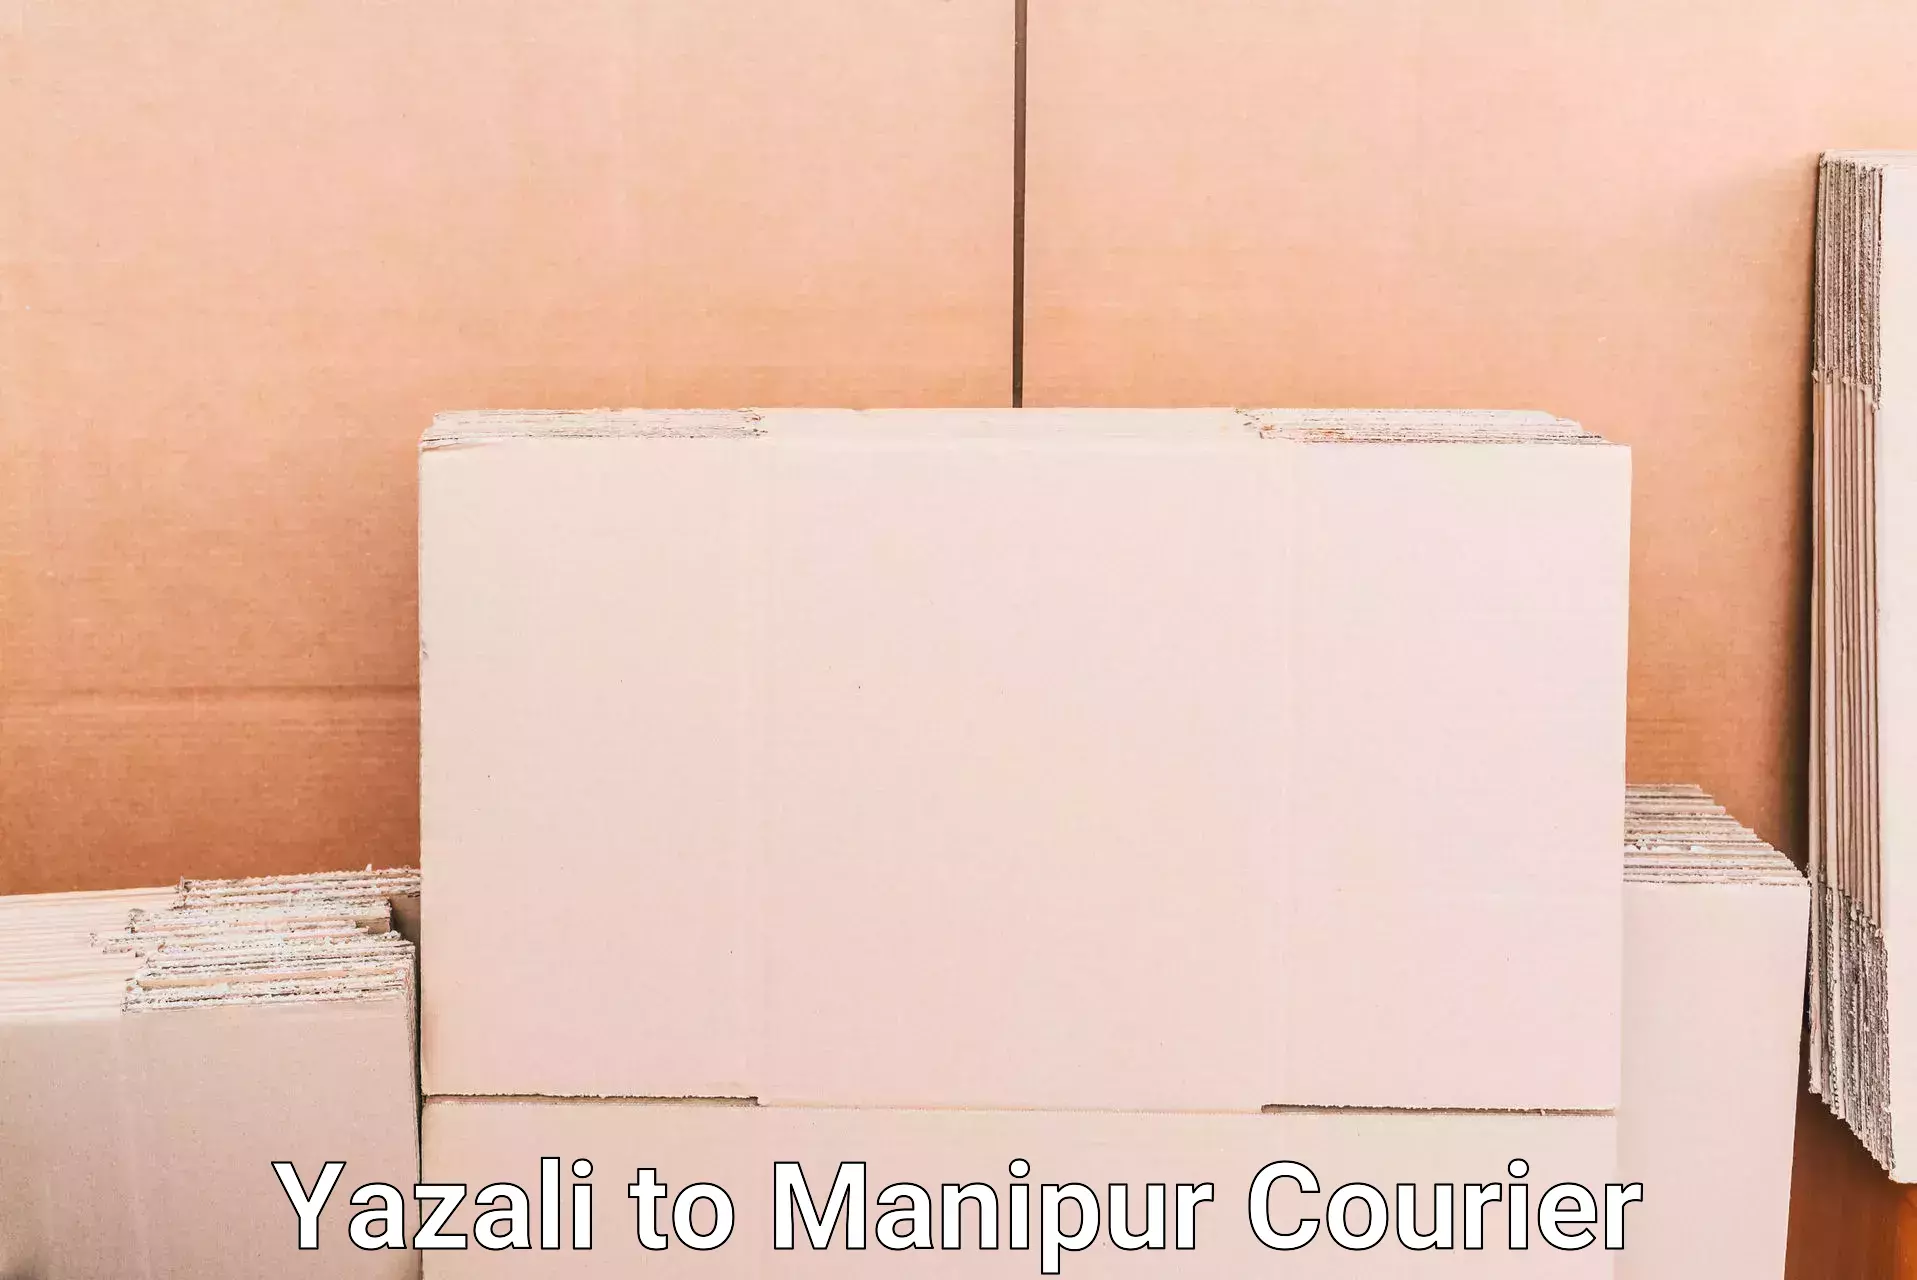 Luggage transport company Yazali to Manipur